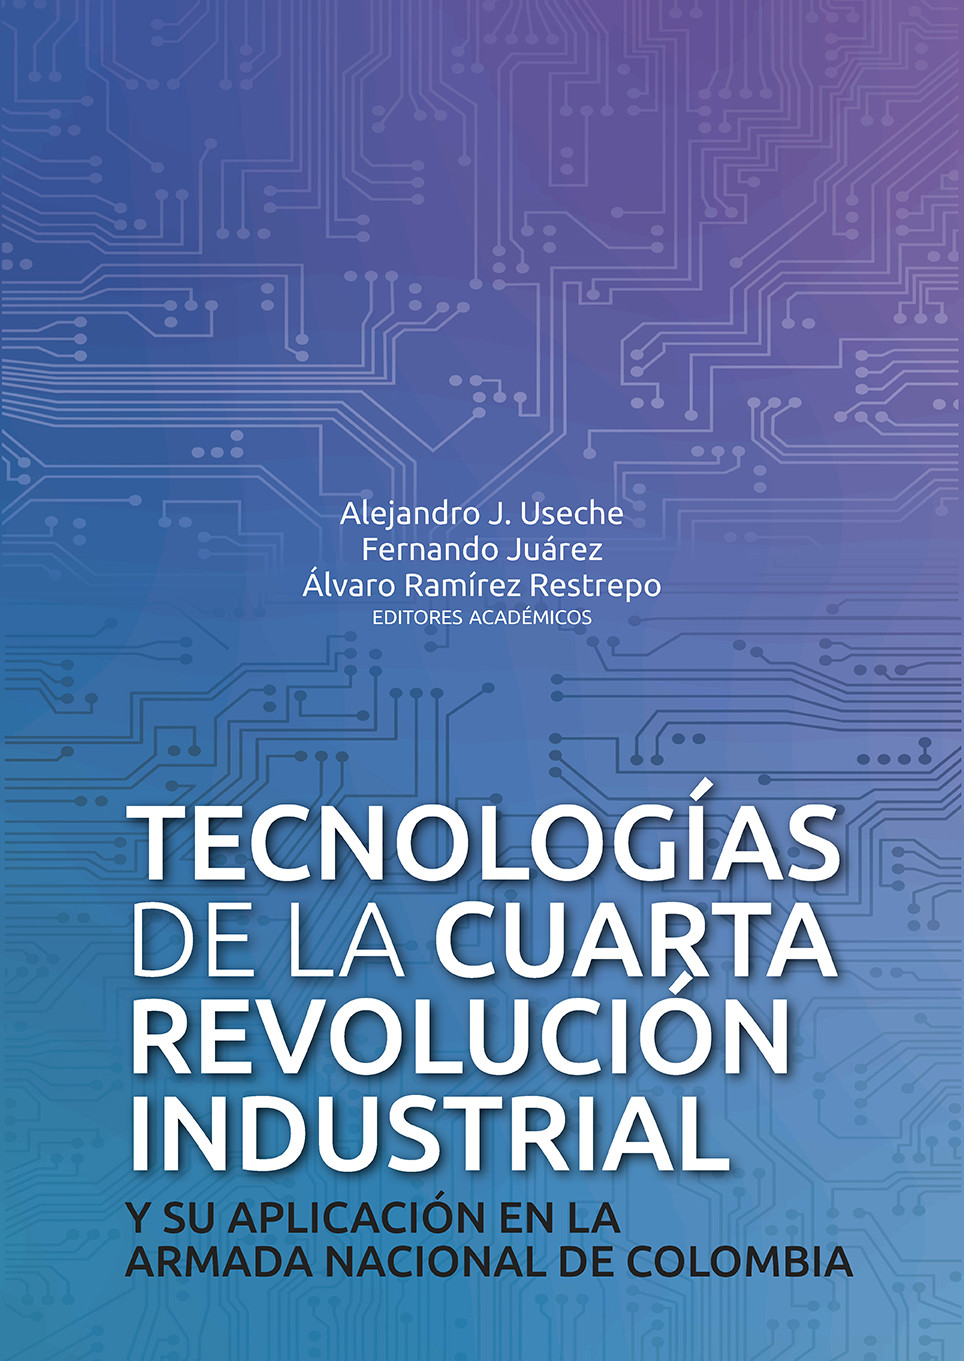 Imagen de portada del libro Tecnologías de la cuarta revolución industrial y su aplicación en la Armada Nacional de Colombia